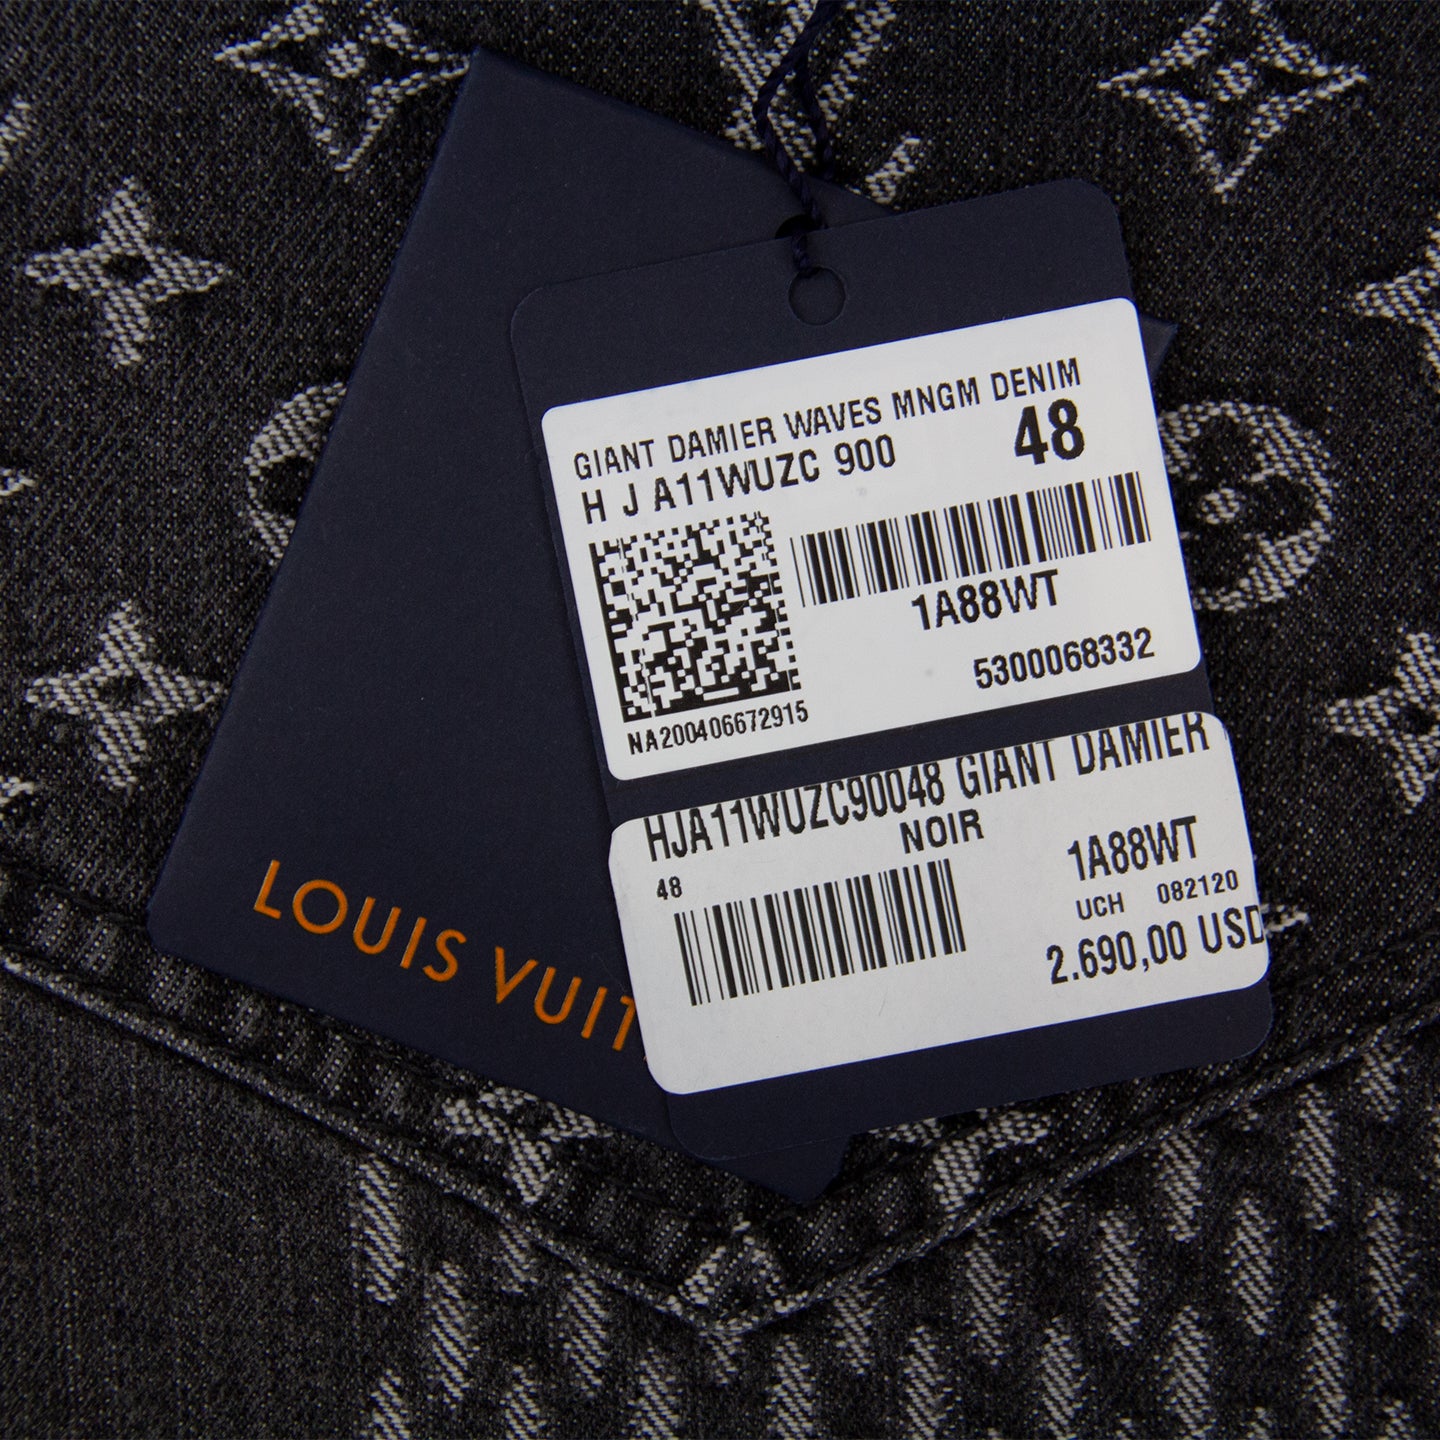 Louis Vuitton X Nigo Giant Damier Waves MNGM Denim Pants Indigo